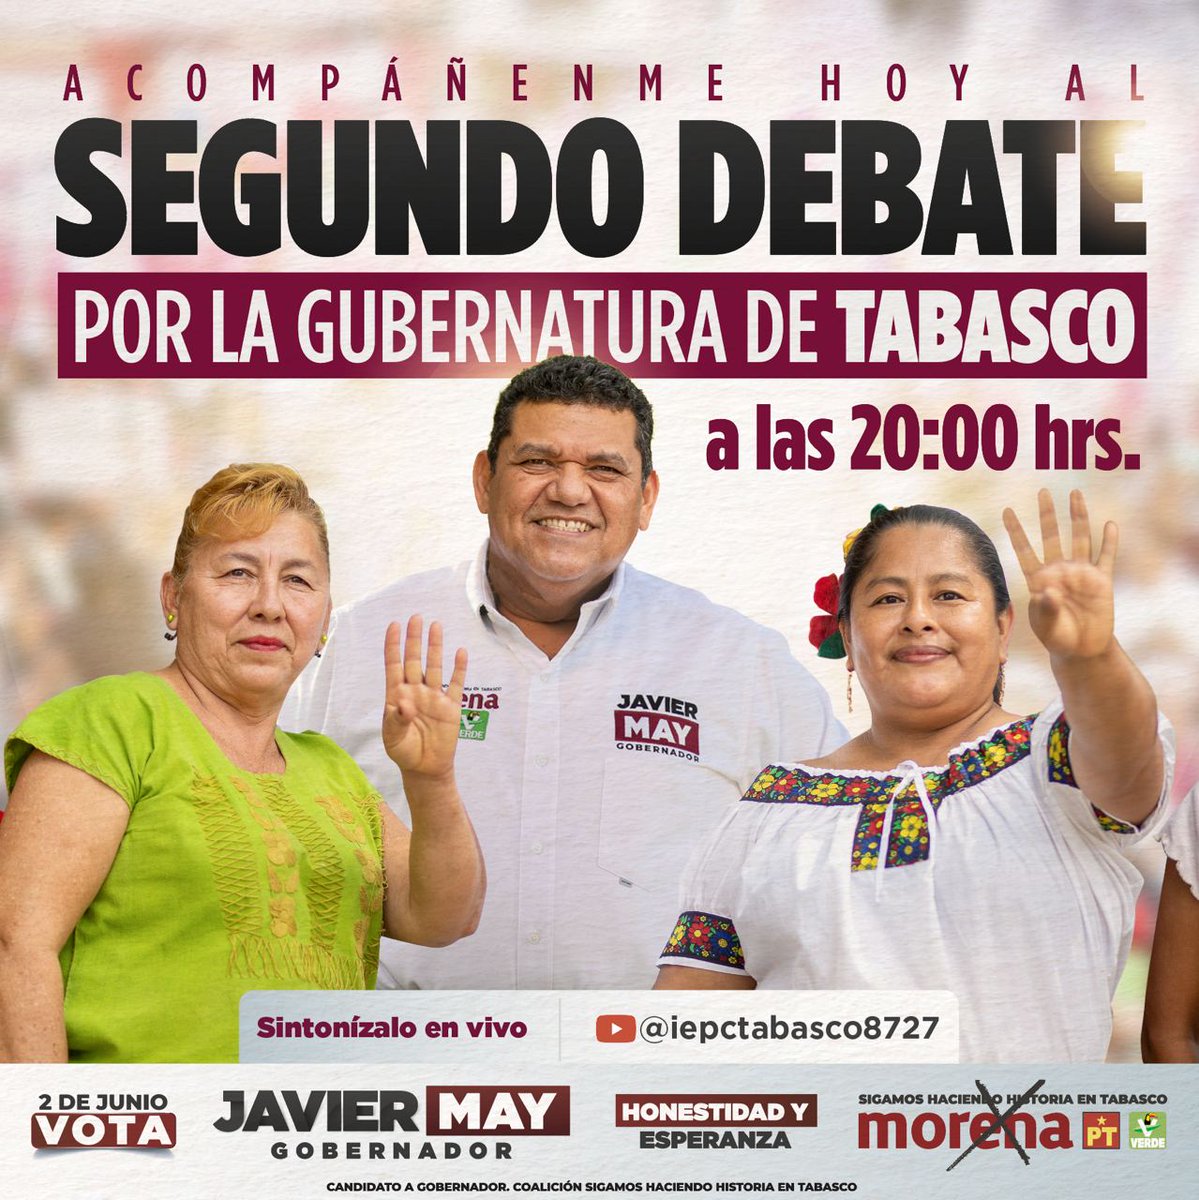 Nos vemos hoy en el segundo debate por la gubernatura de Tabasco a las 20:00 hrs. ¡Vamos a ganar el debate y la elección! #JavierMayGobernador